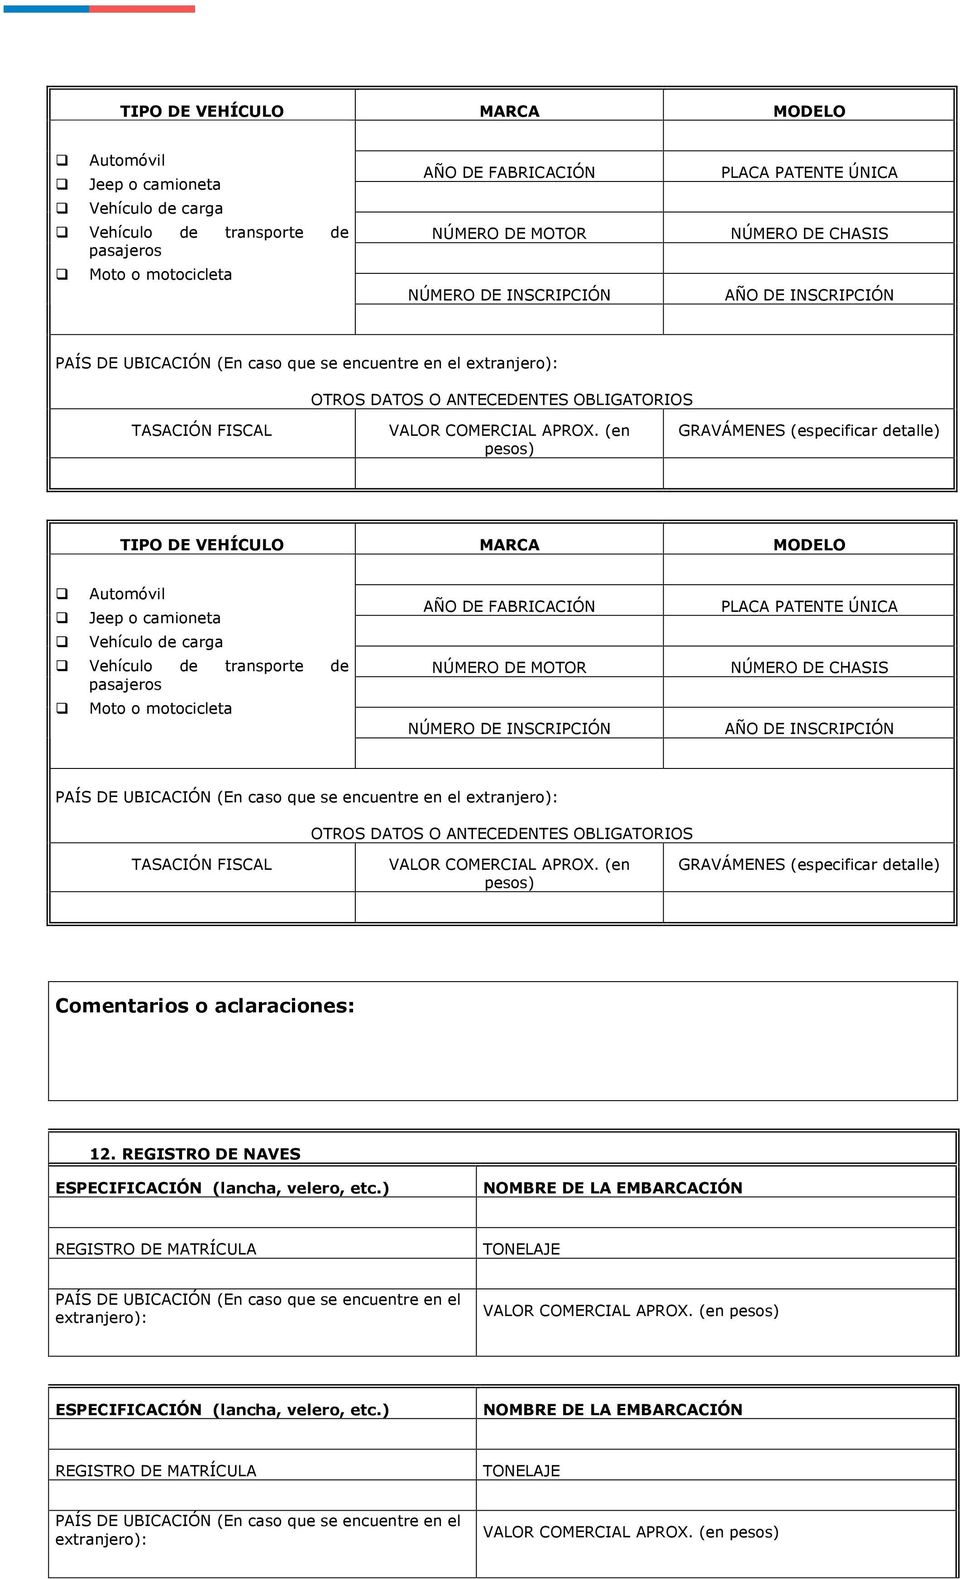 PAÍS DE UBICACIÓN (En caso que se encuentre en el extranjero): GRAVÁMENES (especificar detalle) 12. REGISTRO DE NAVES ESPECIFICACIÓN (lancha, velero, etc.